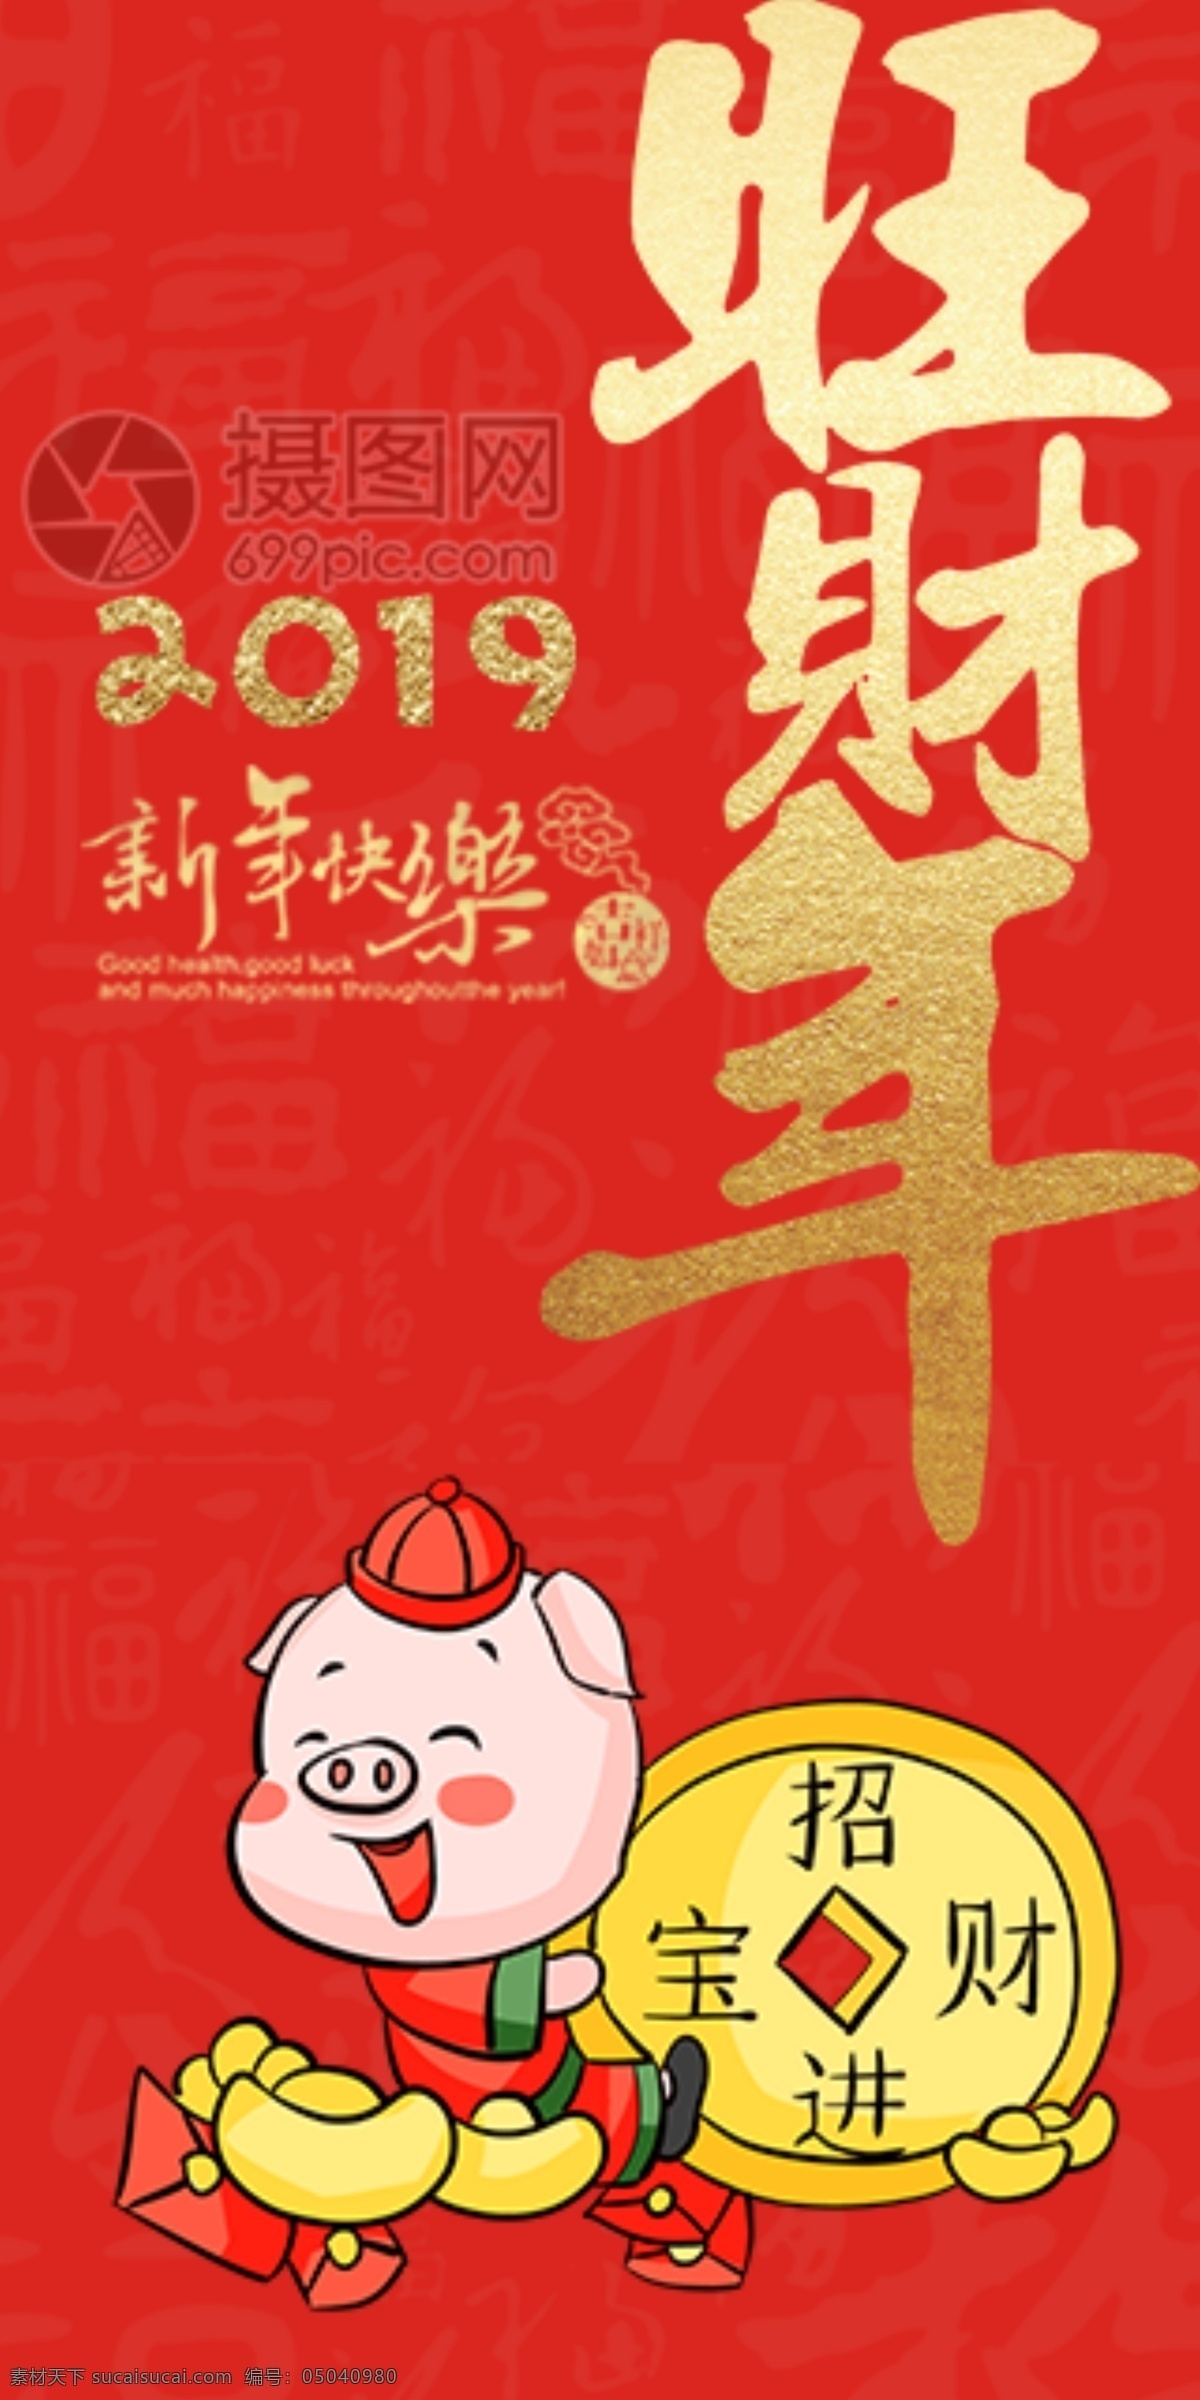 2019 猪年 新春 红包 旺 财年 猪年红包 新春红包 红包素材 红包设计 新年红 新年红包 旺财年